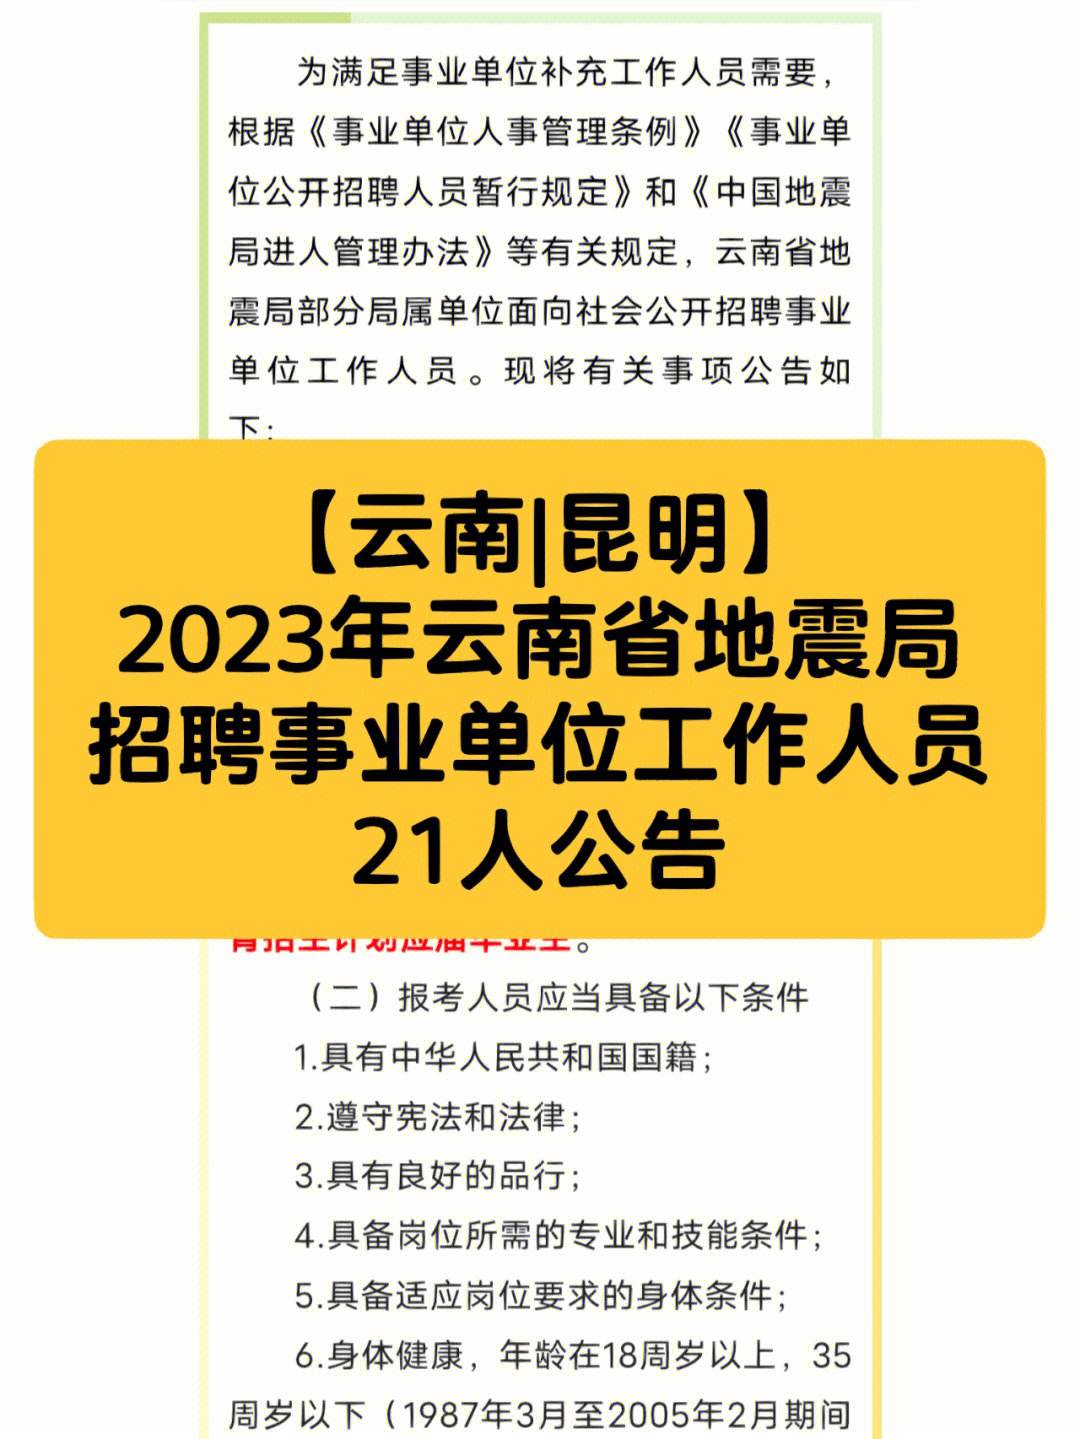 2023年寻乌事业单位招聘信息(2023年寻乌事业单位招聘信息公告)